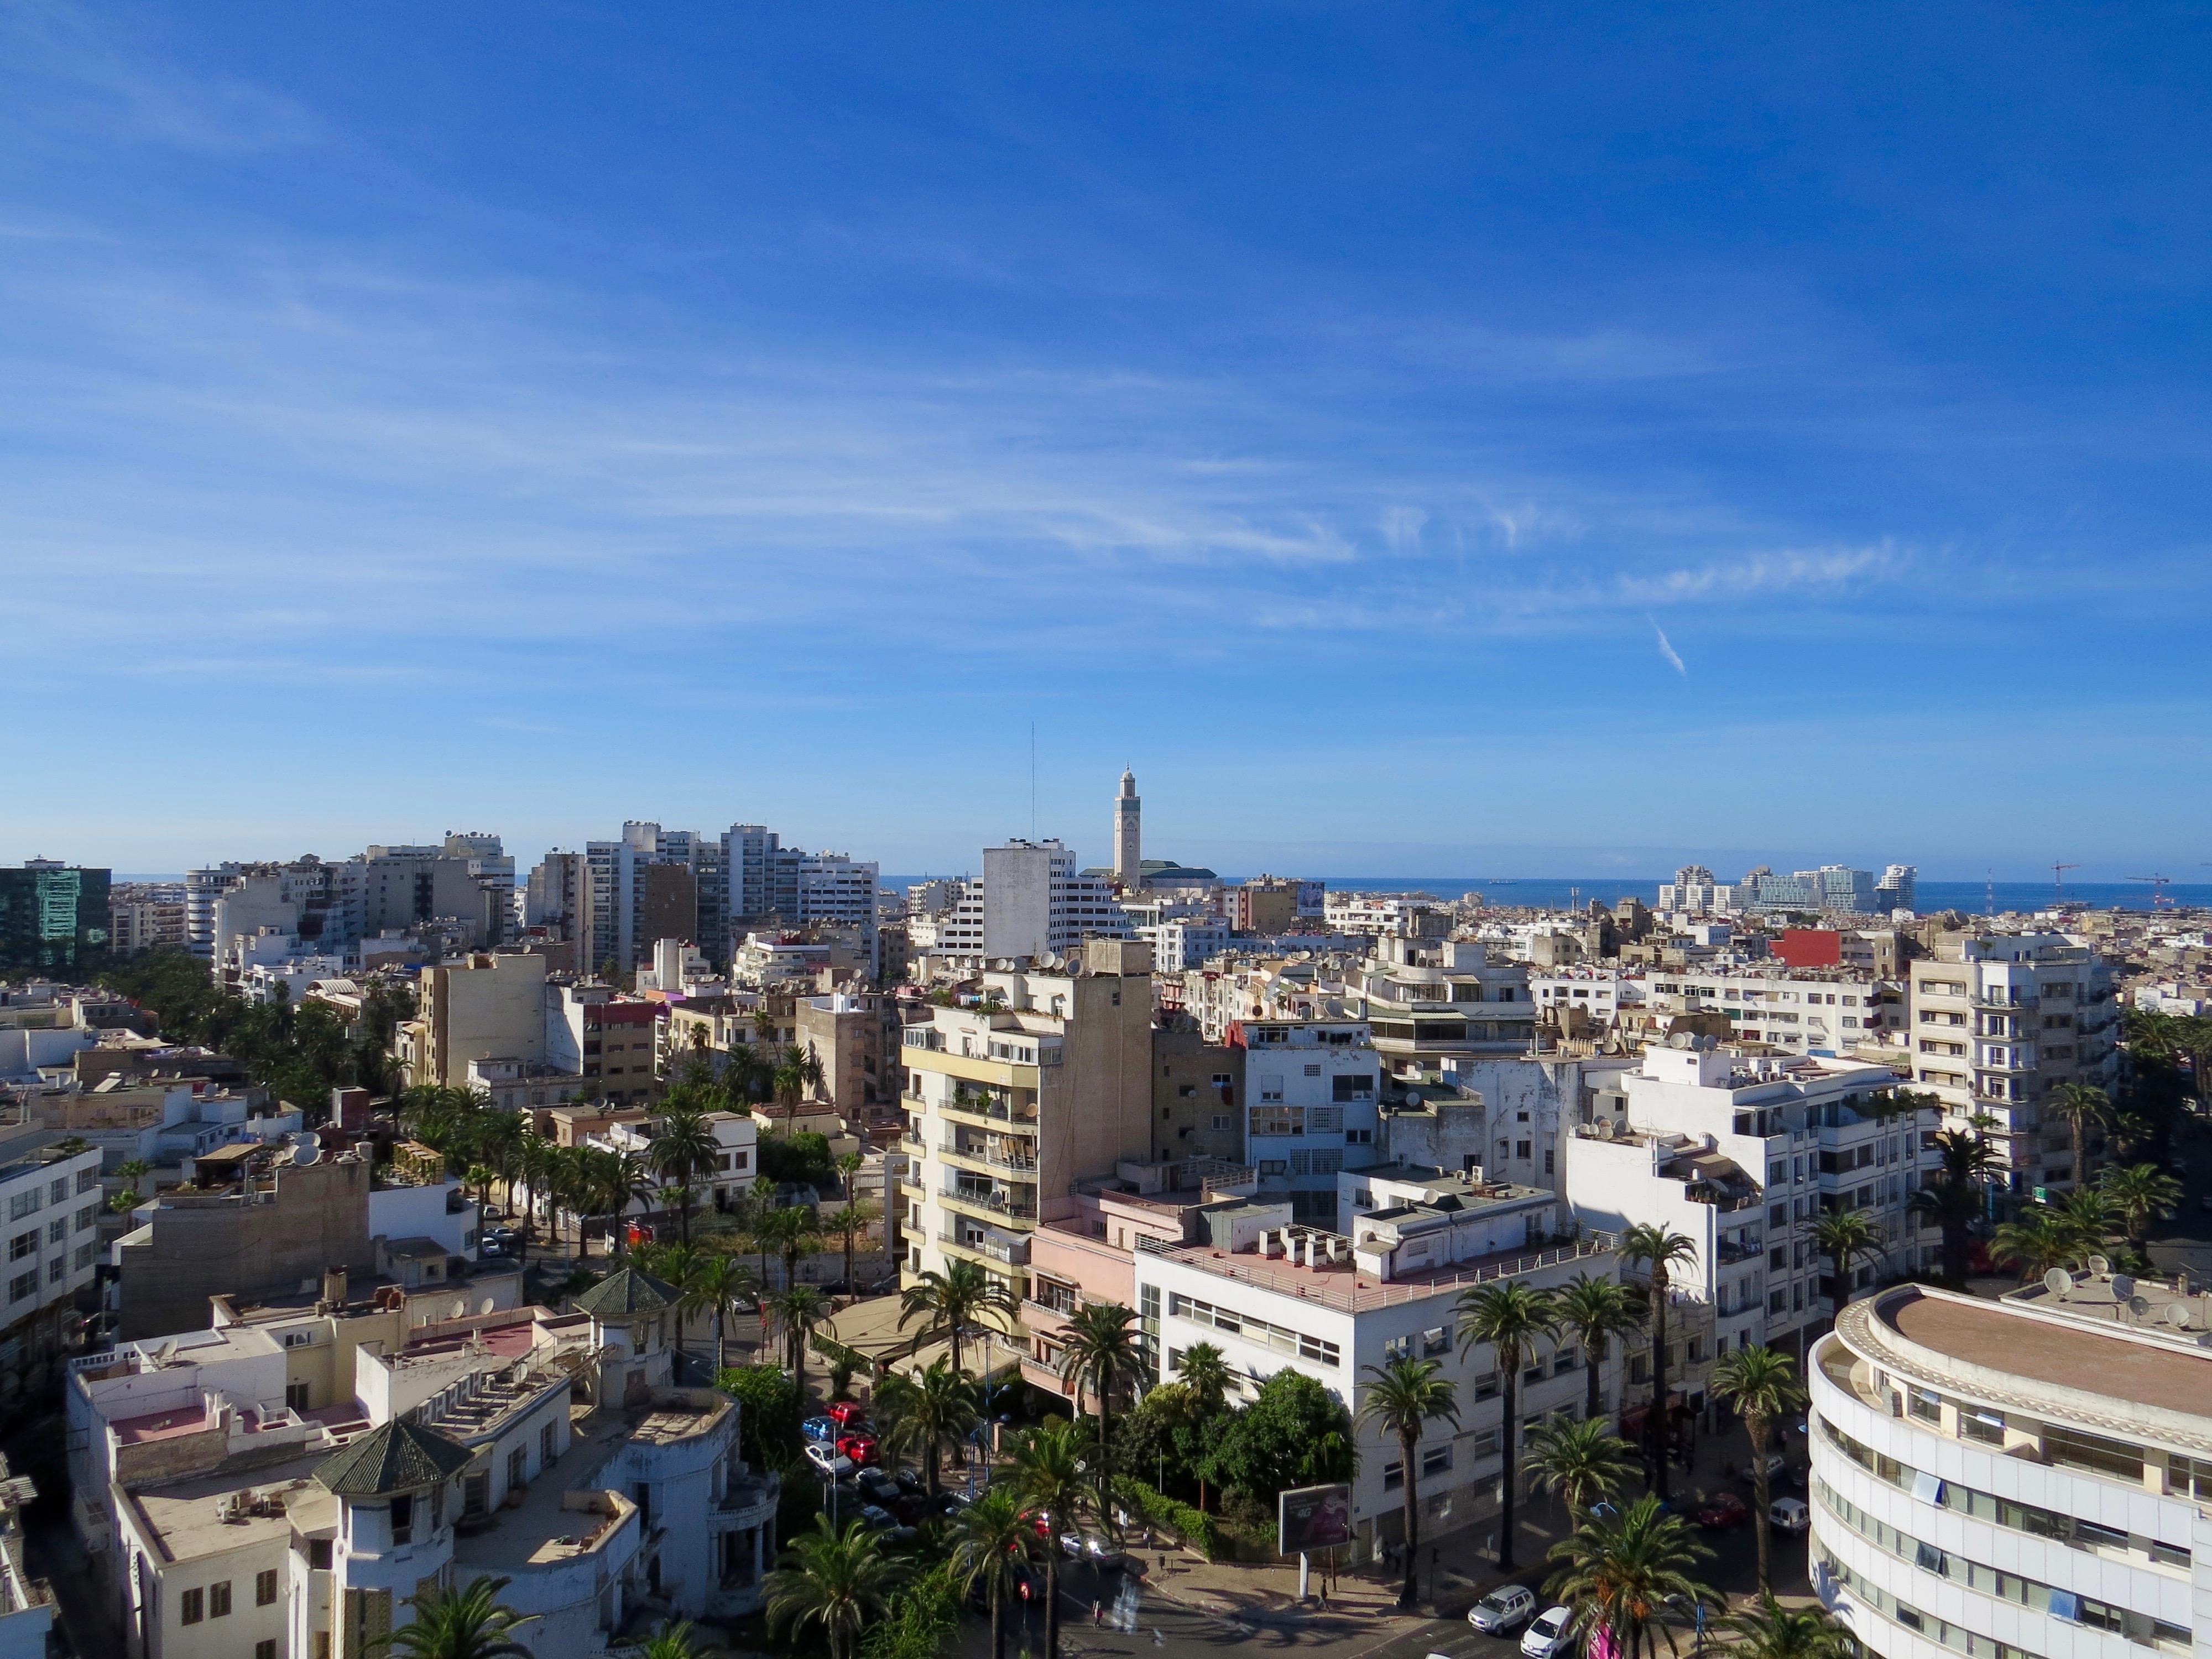 Casablanca's skyline